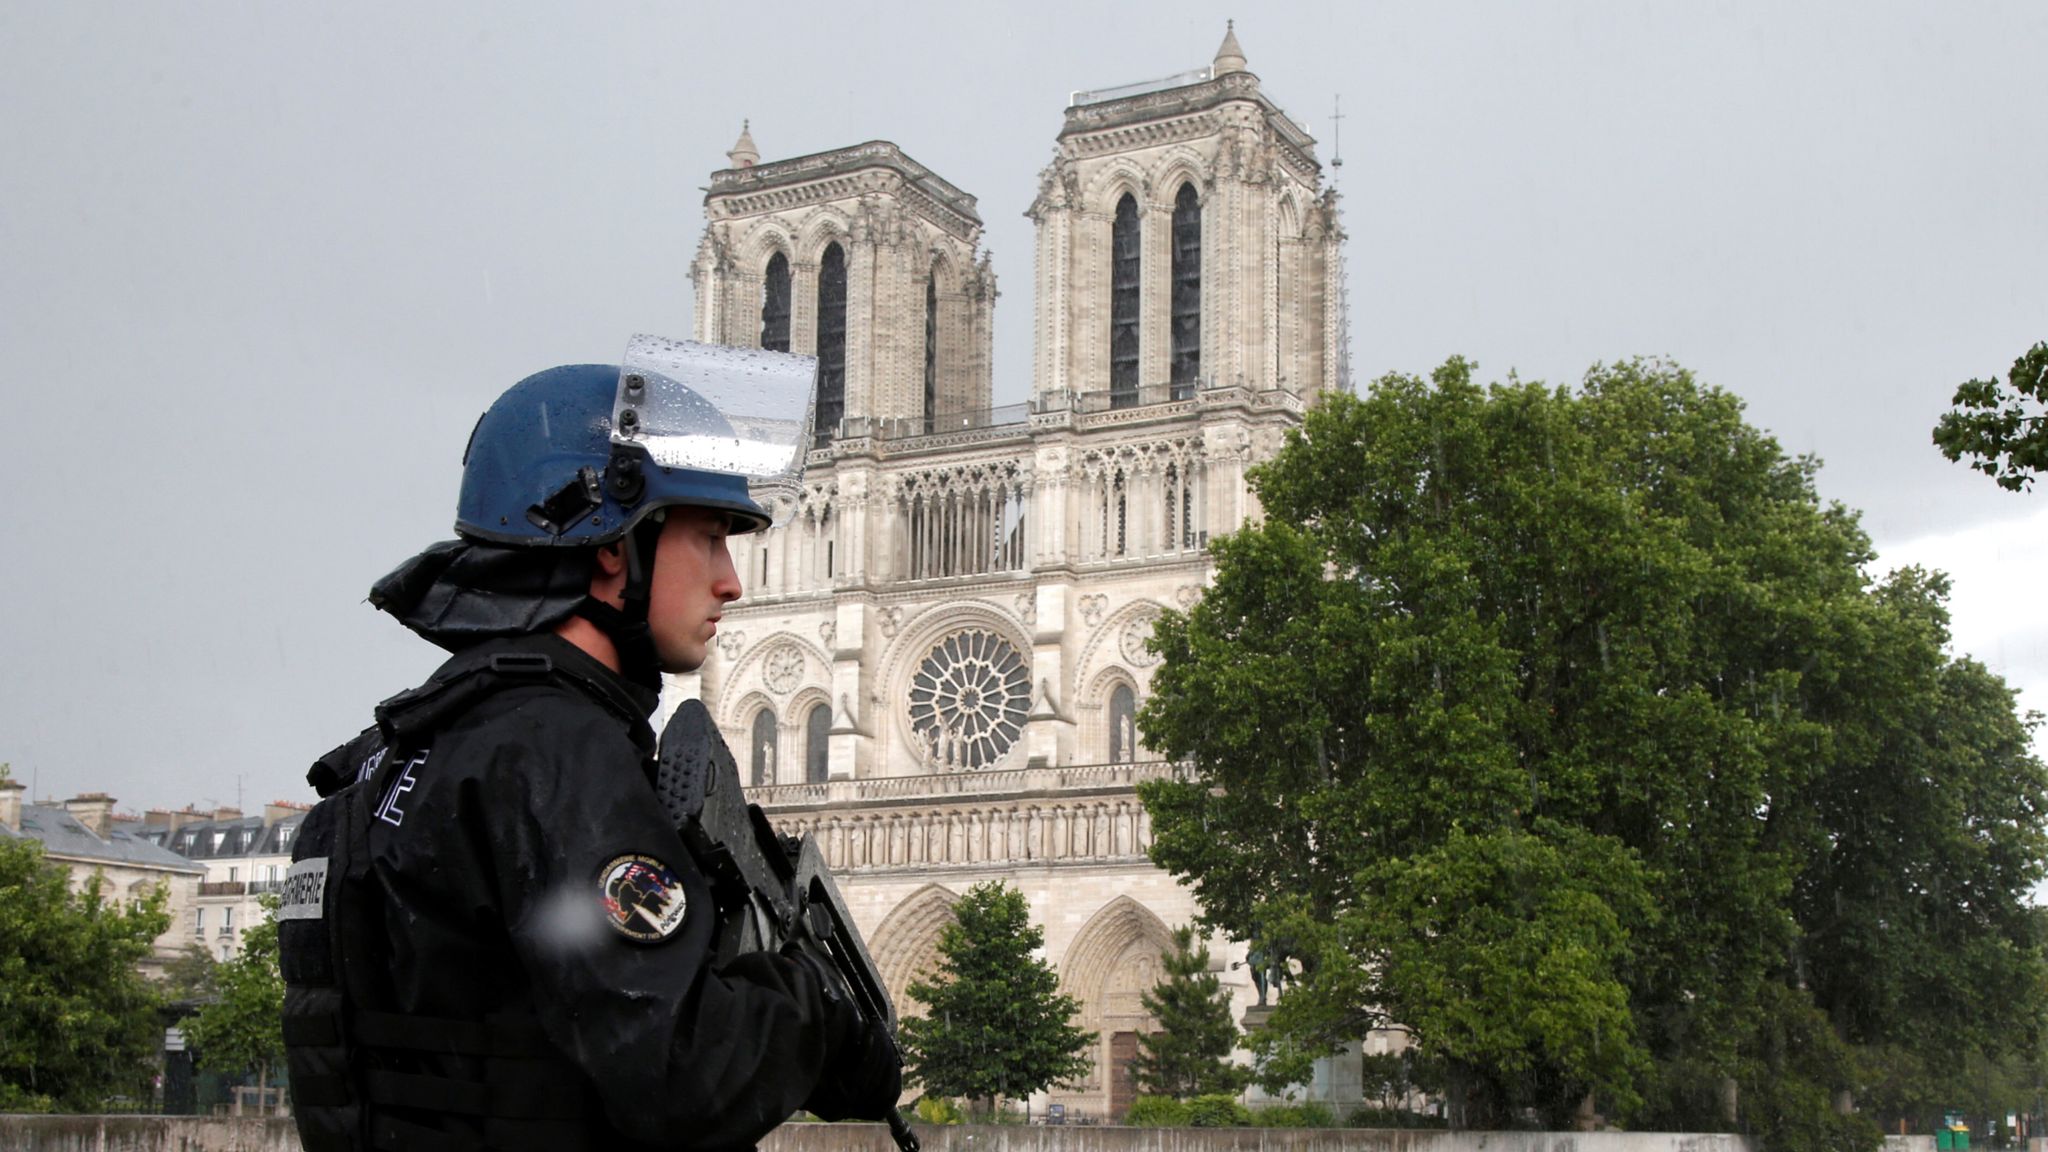 مكافحة الإرهاب فى فرنسا... سياسة انتقائية لعودة أبناء "الدواعش"